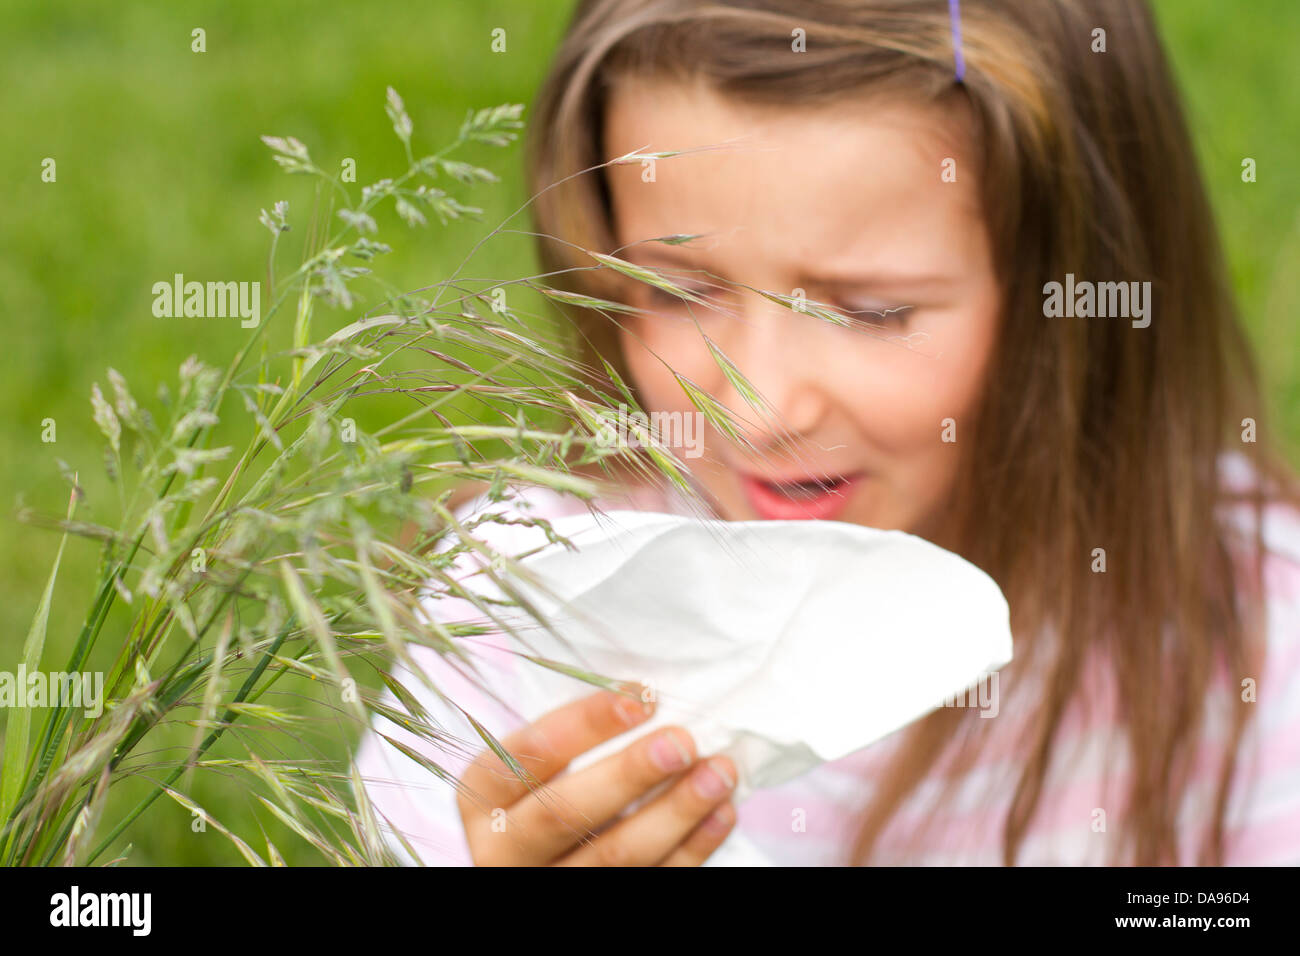 La fièvre des foins, allergies, toxines provoquées par l'herbe, l'herbe, à l'allergie allergie, fille, enfant, sept ans, mouchoir, Banque D'Images